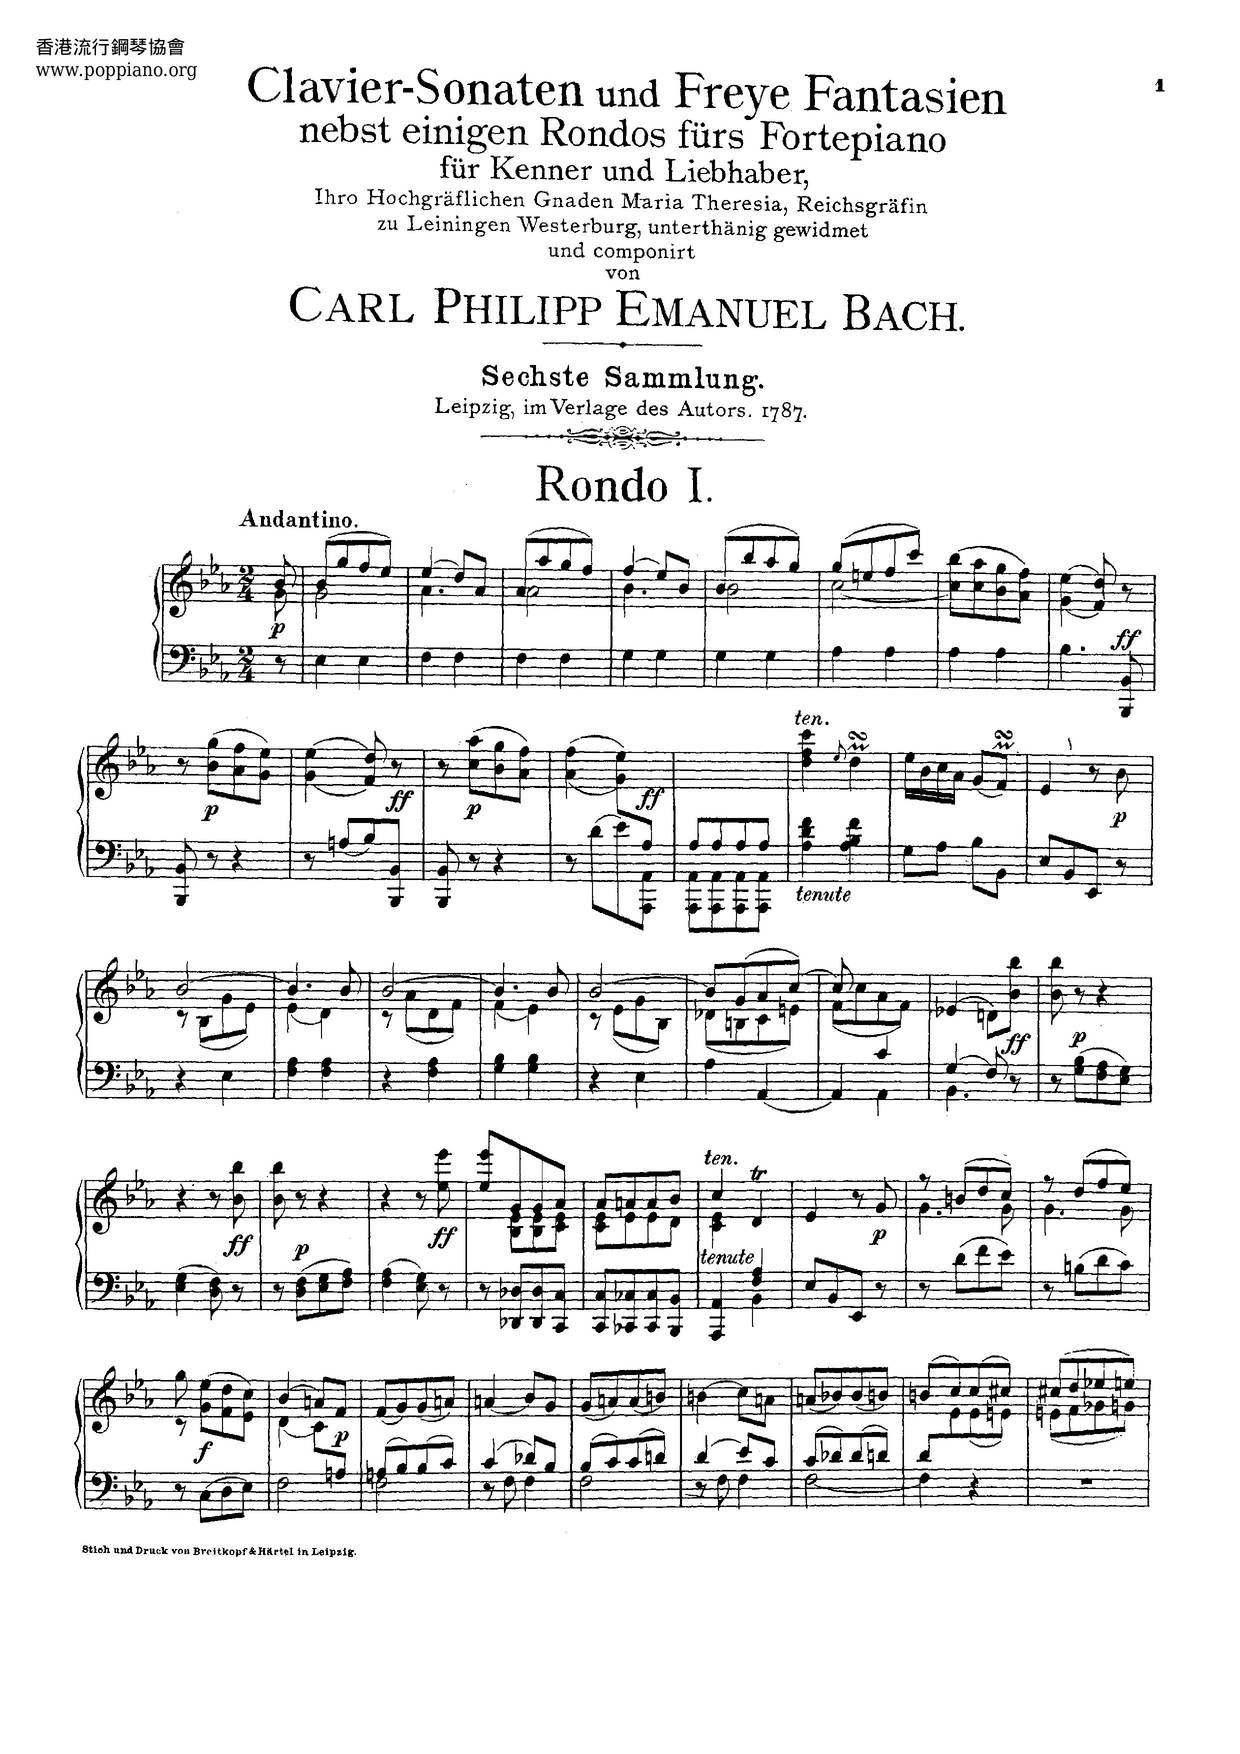 Clavier-Sonaten Für Kenner Und Liebhaber, Wq.55-59, 61 Score